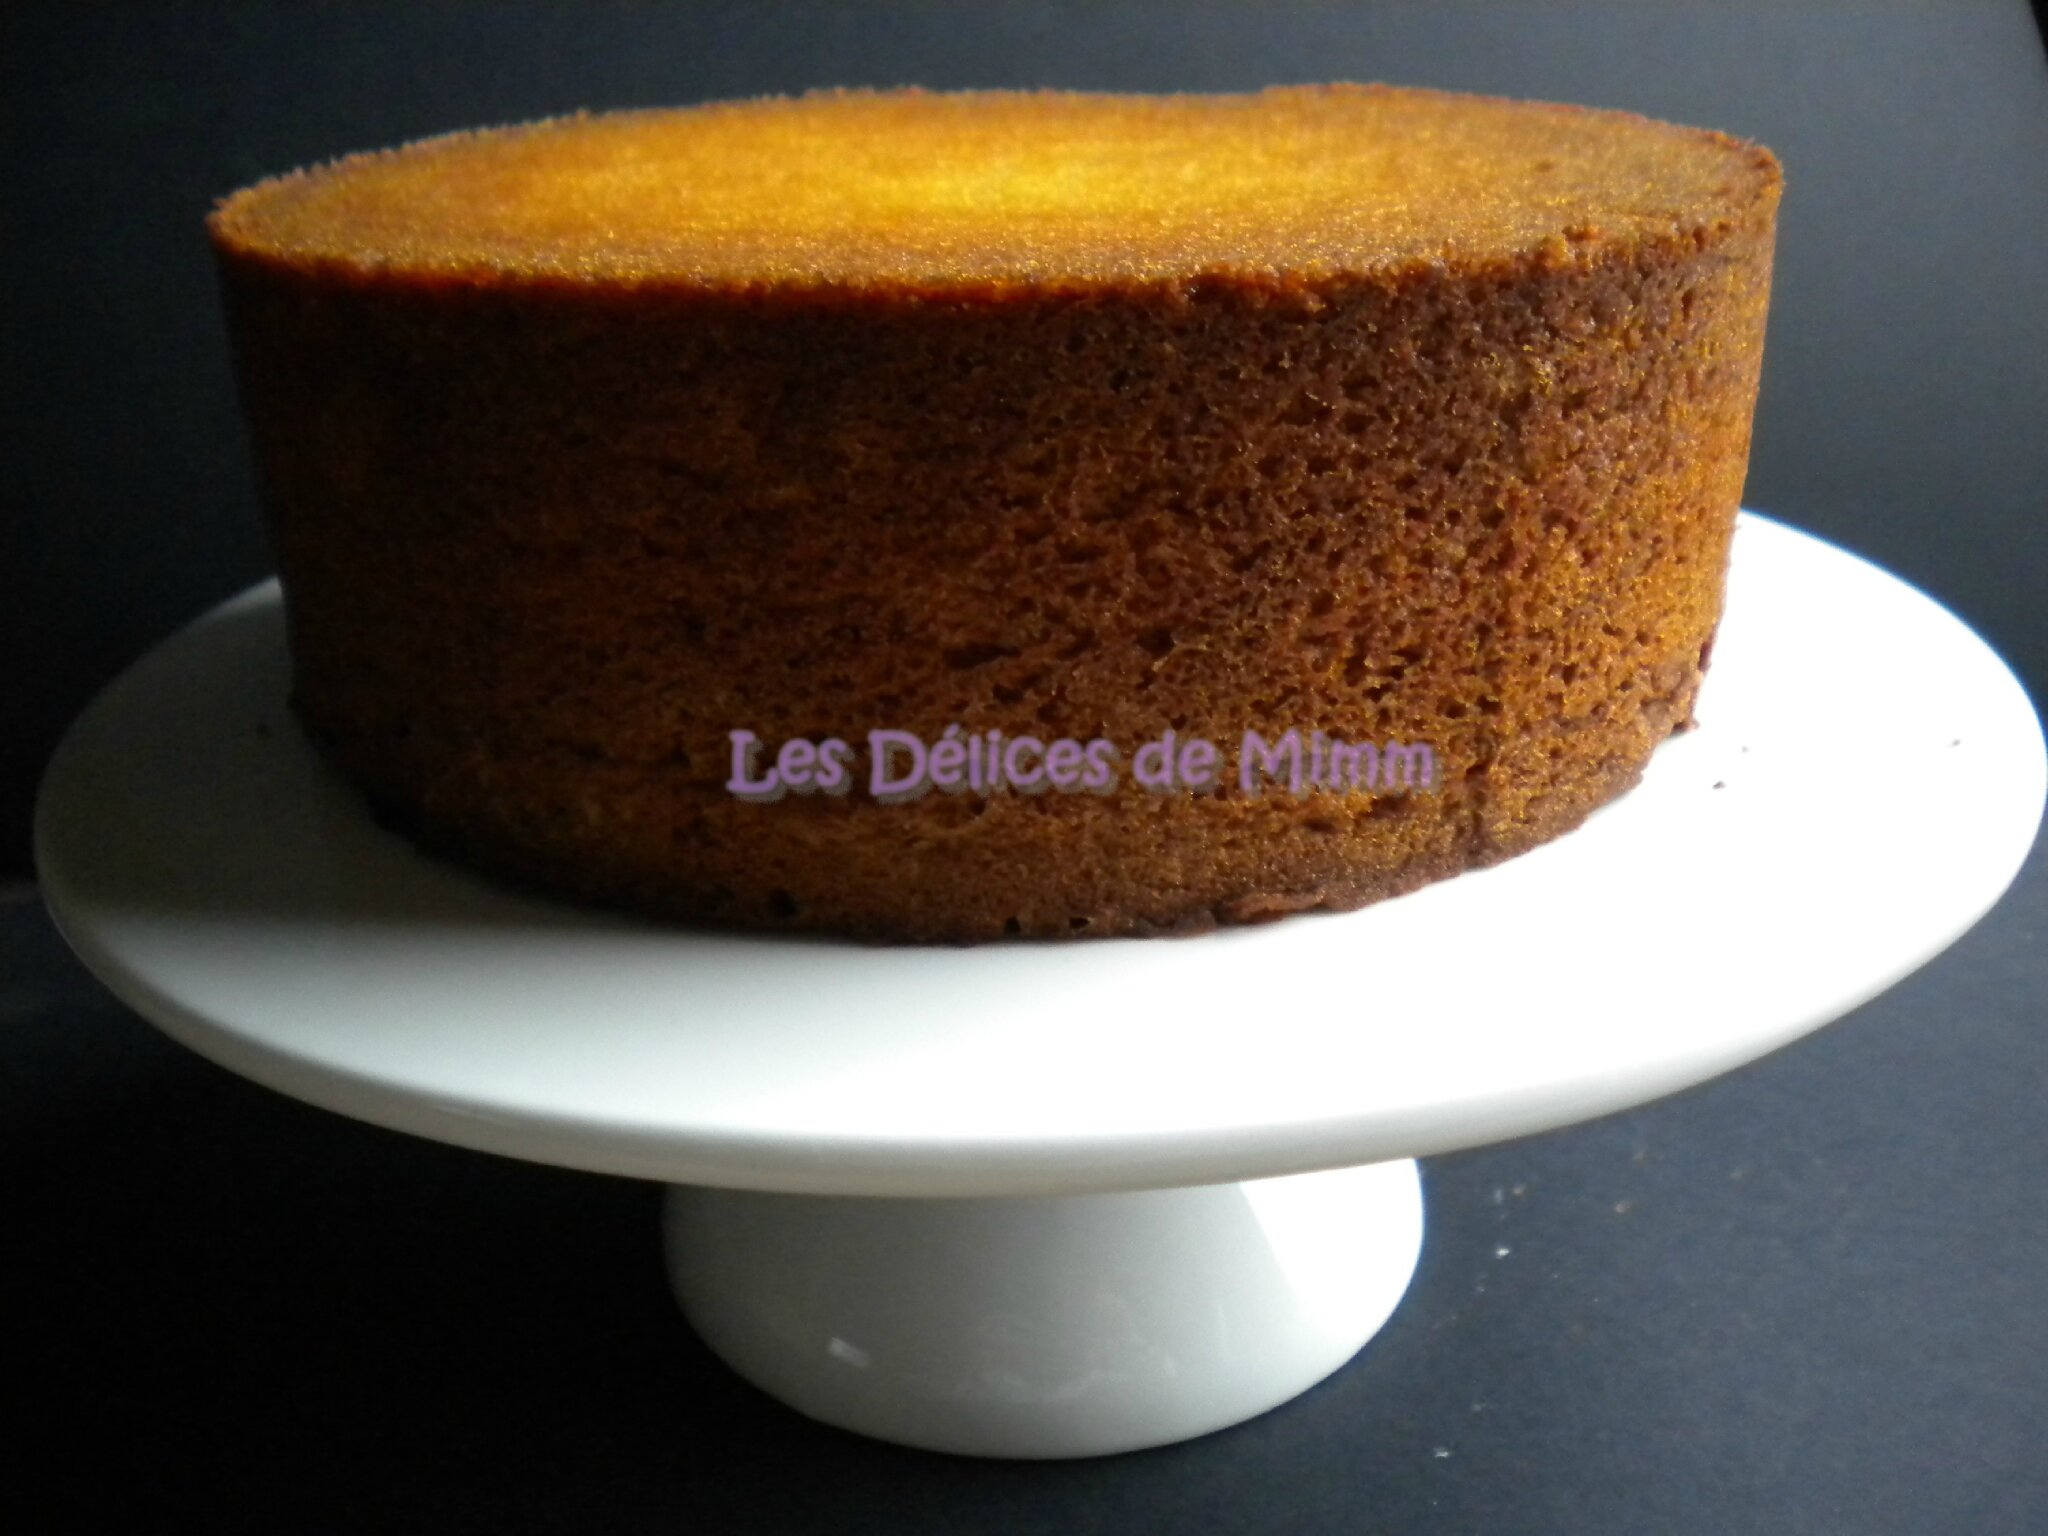 Le Sponge Cake Le Gateau Ideal Pour Le Cake Design Les Delices